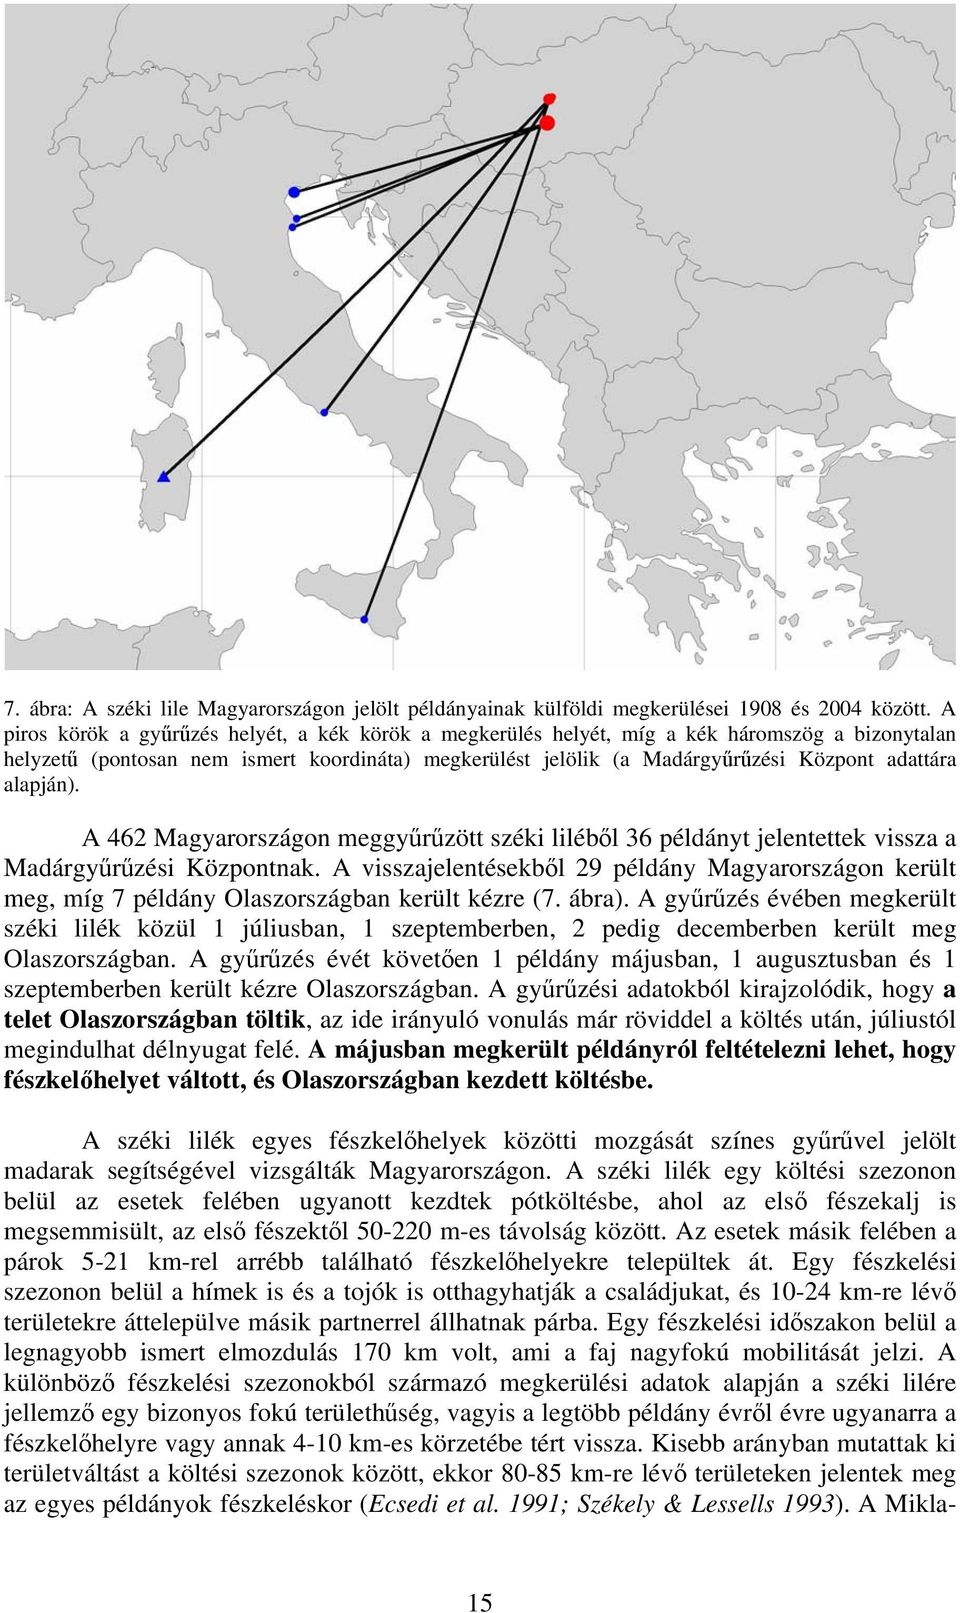 alapján). A 462 Magyarországon meggyűrűzött széki liléből 36 példányt jelentettek vissza a Madárgyűrűzési Központnak.